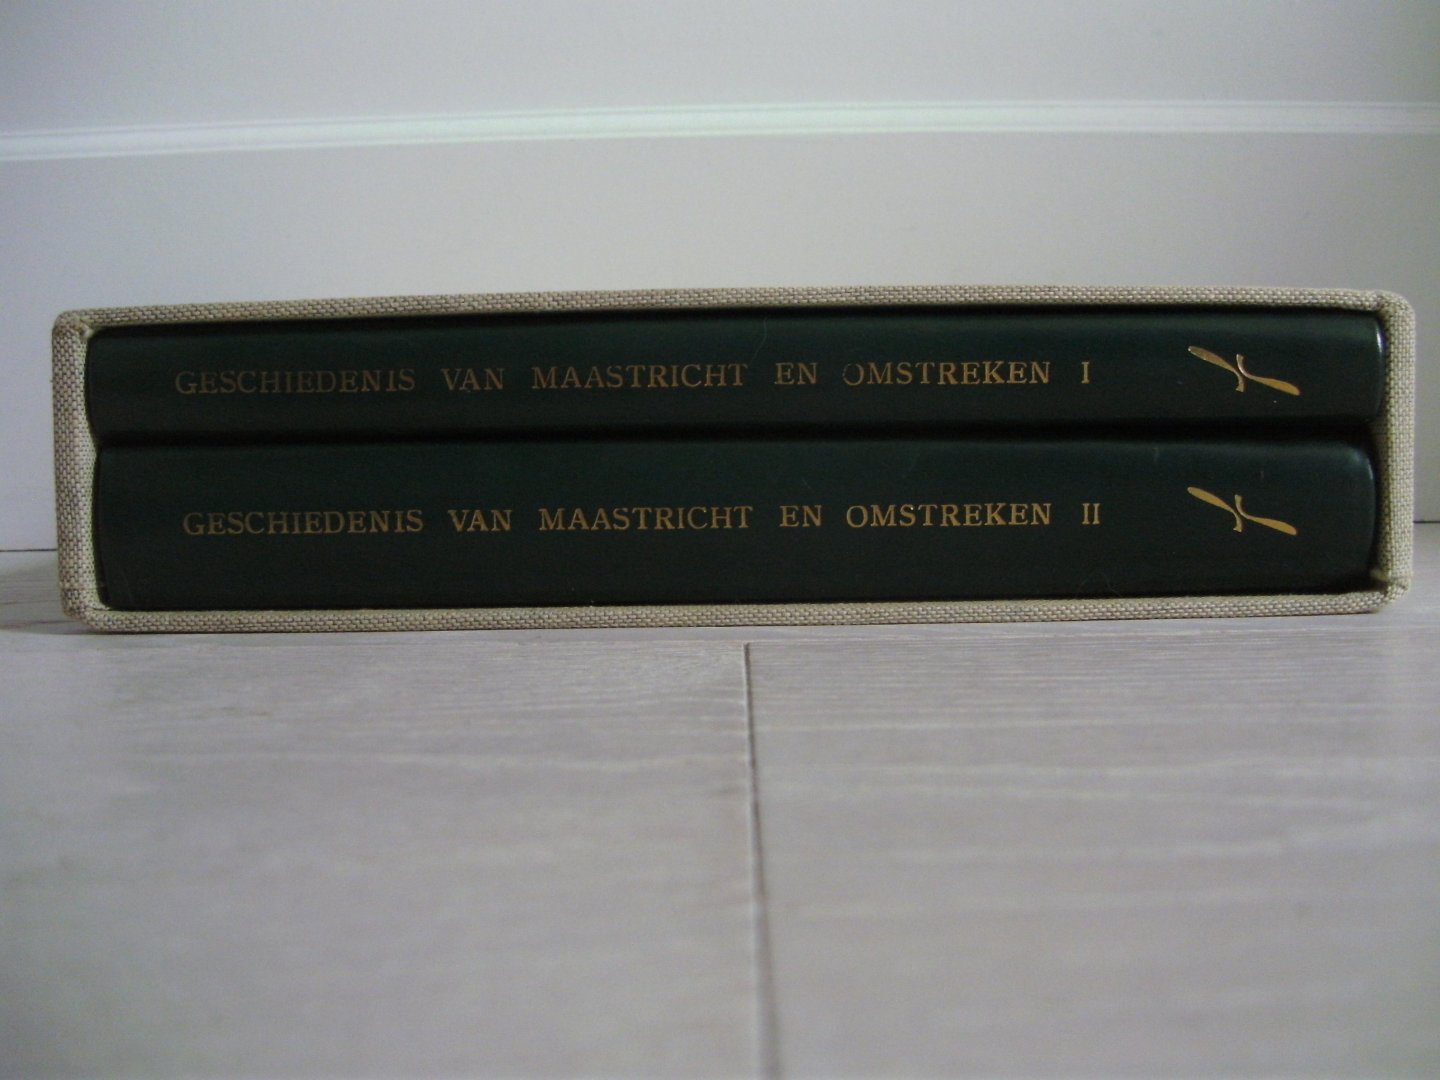 Schoonbrood,M. & J.S.Grossier. - Schetsen uit de geschiedenis van Maastricht en omstreken.